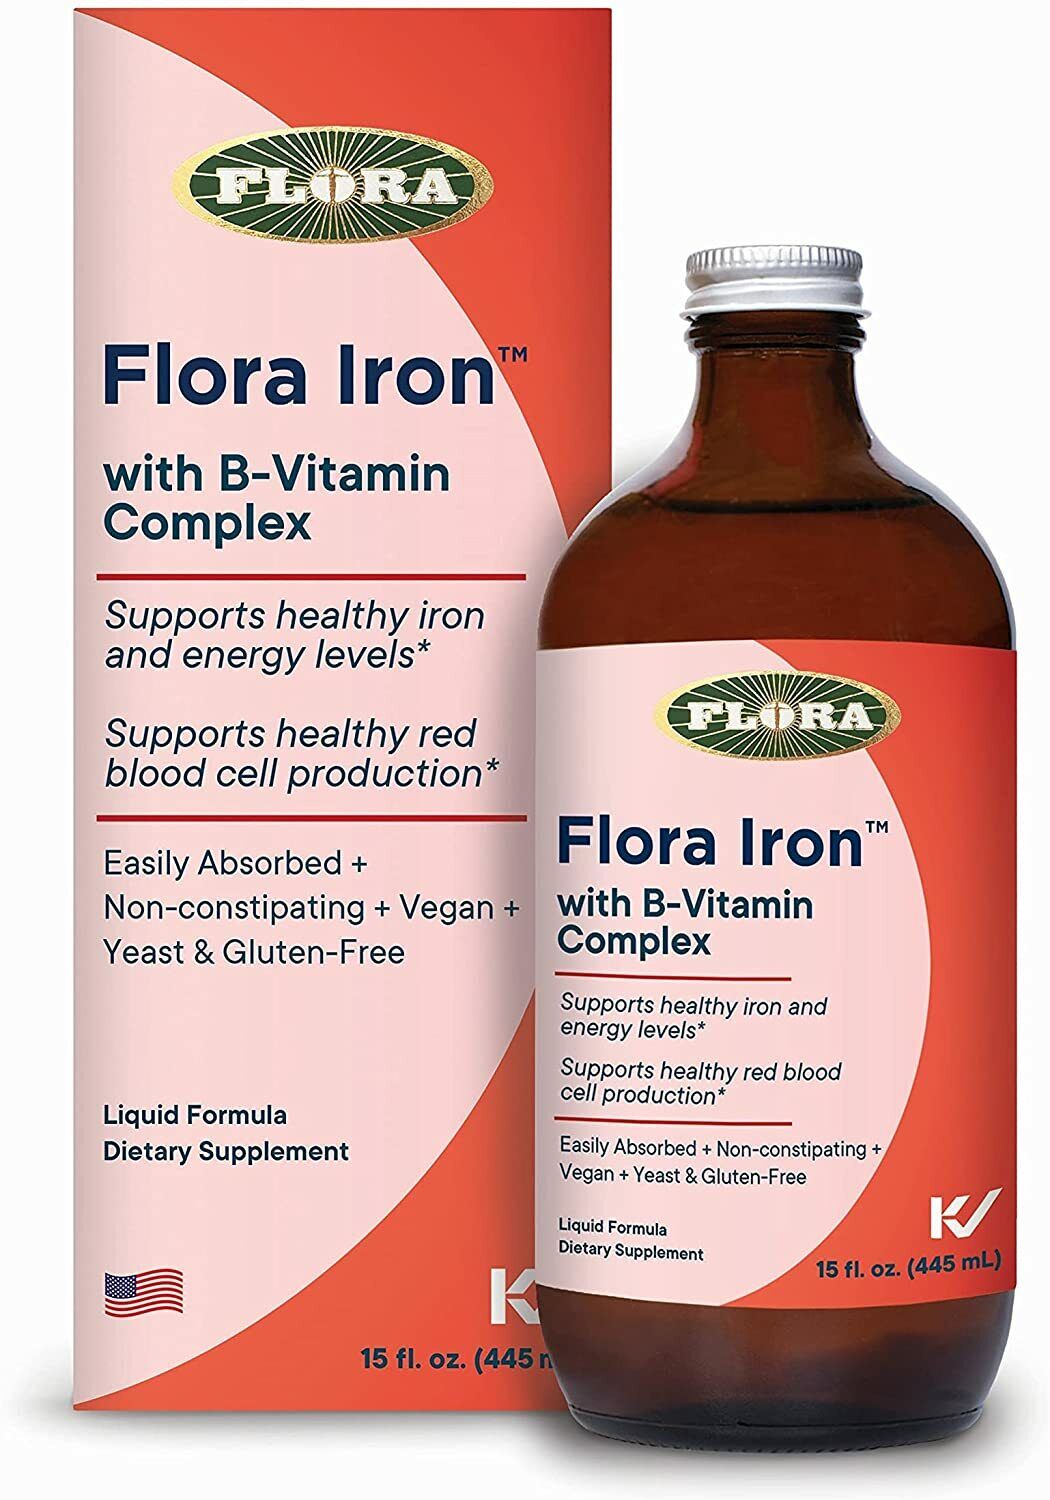 Hierro con complejo de vitamina B, apoya niveles saludables de hierro y energía